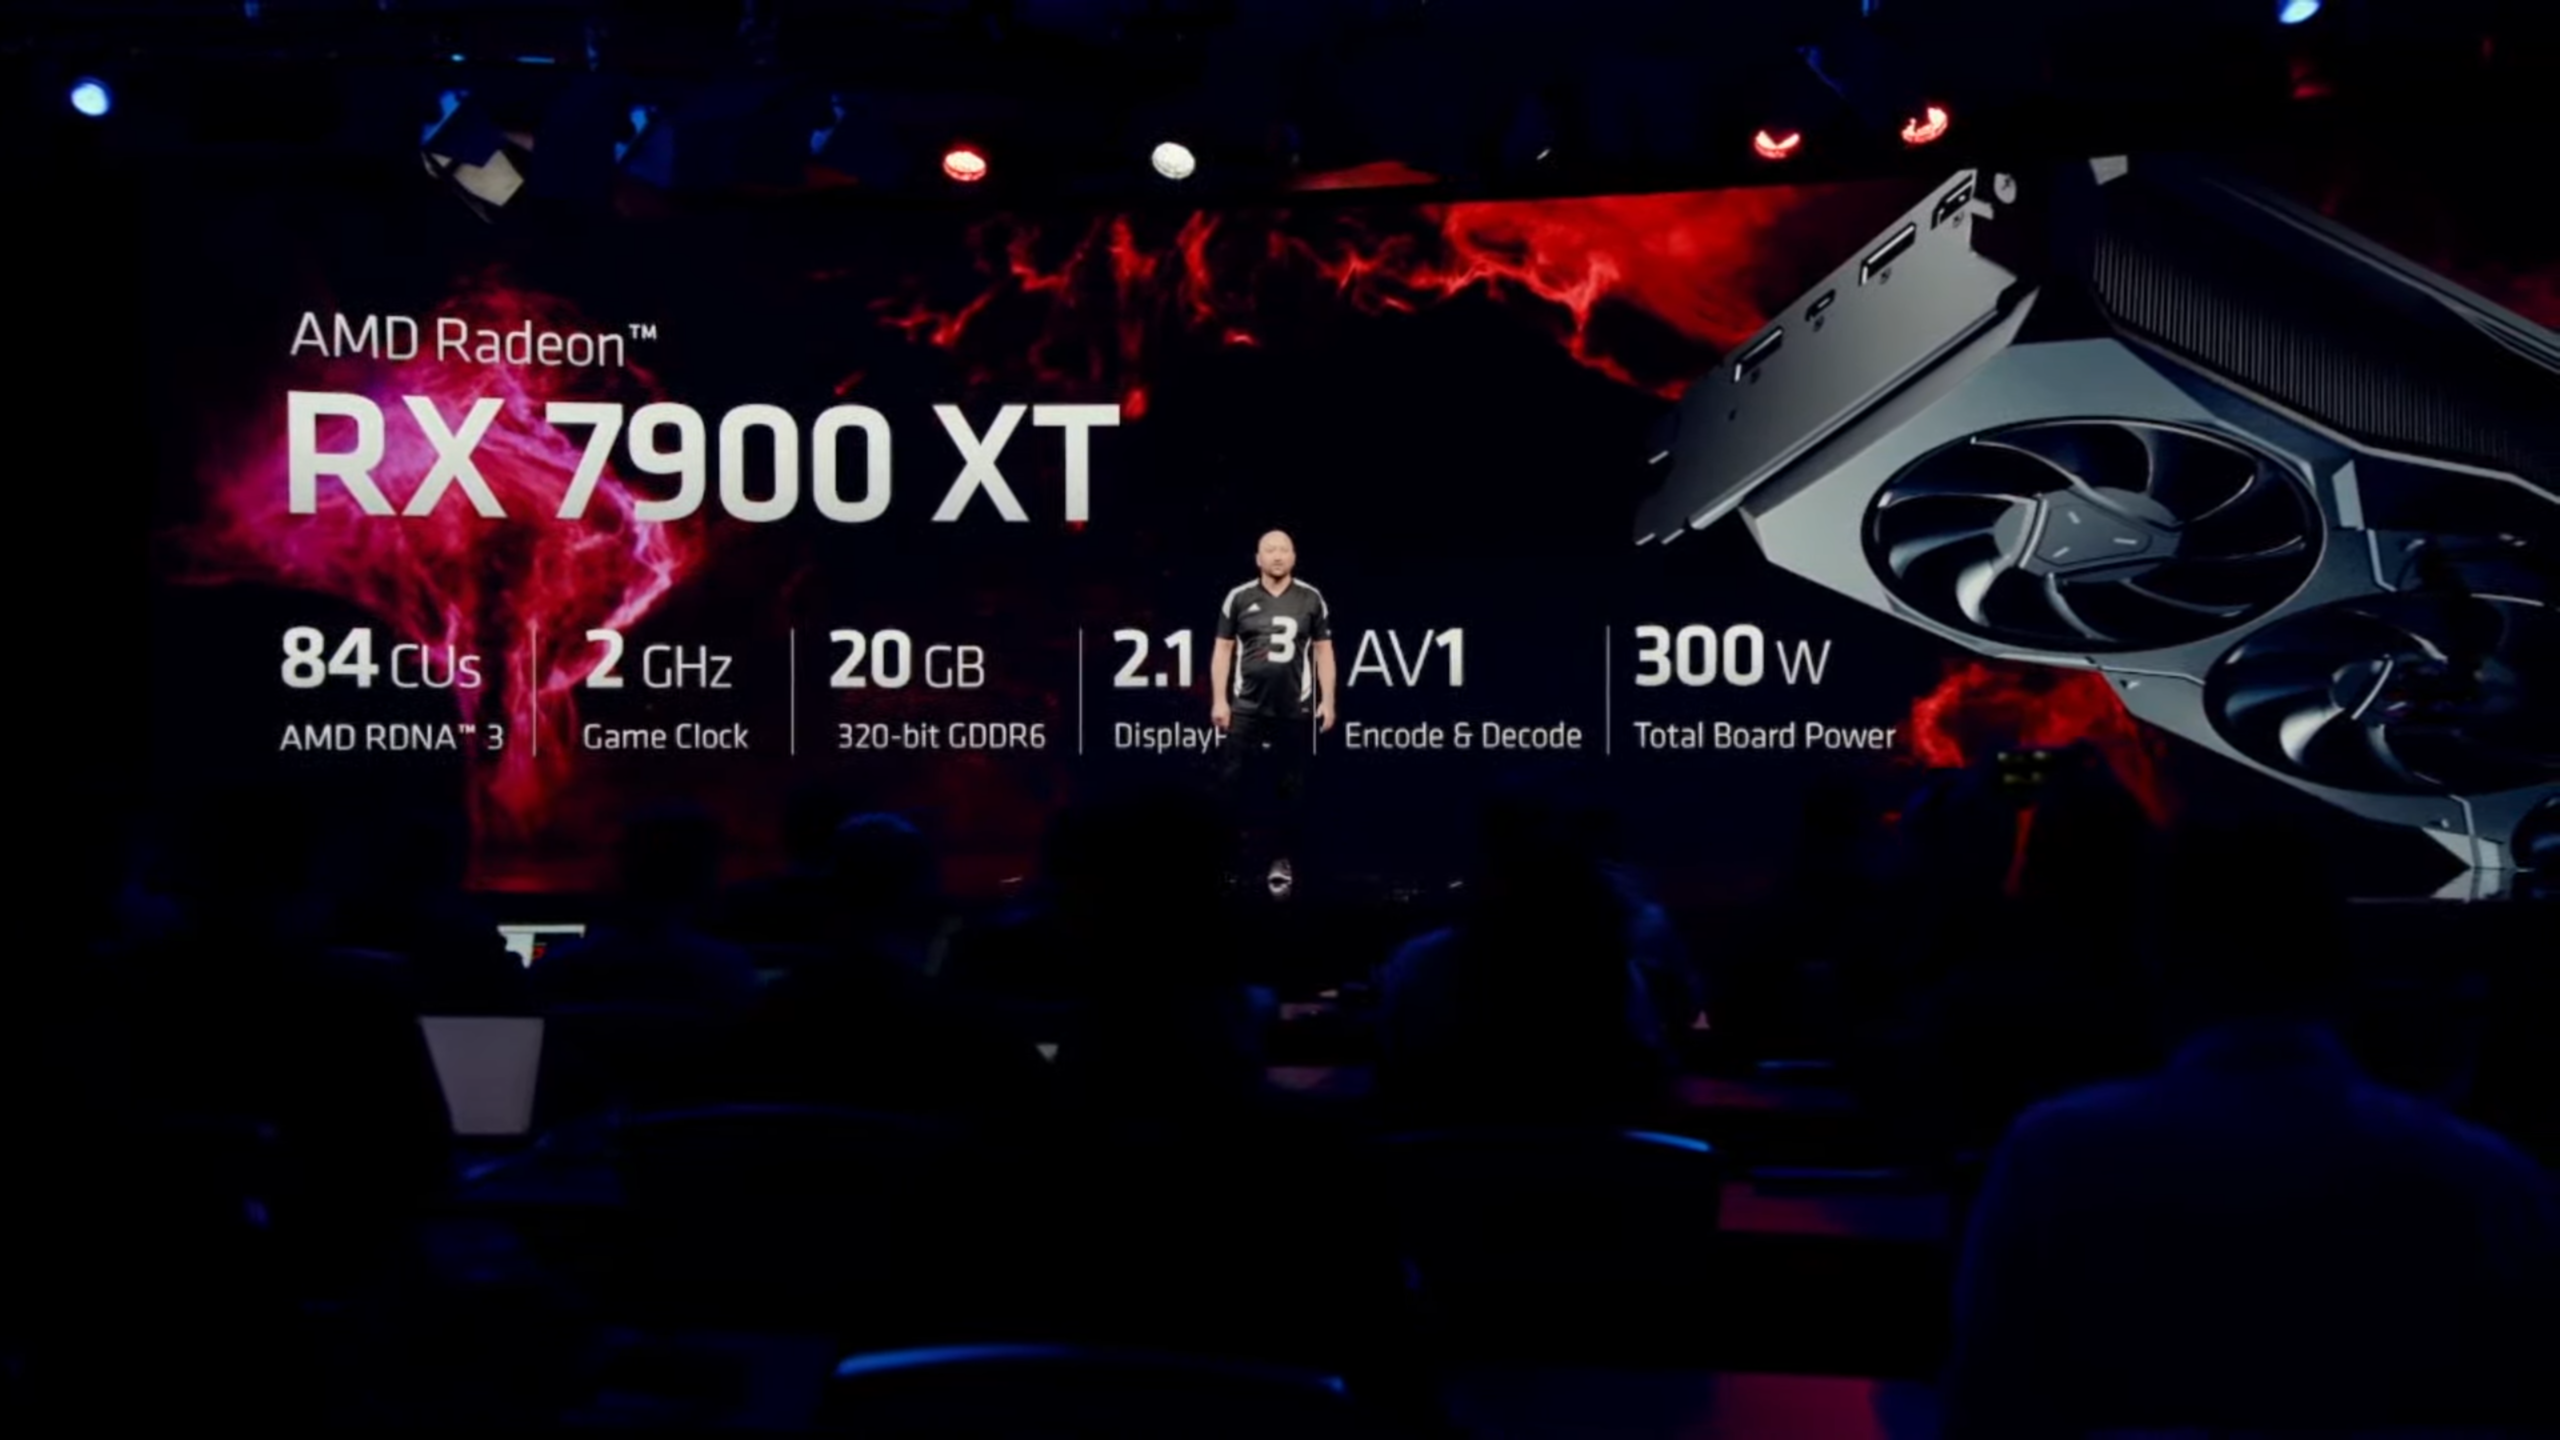 Card đồ họa AMD Radeon RX 7900 XT RDNA 3: Là một trong những card đồ họa tốt nhất và đáng chờ đợi nhất trong năm 2022, AMD Radeon RX 7900 XT RDNA 3 mang lại hiệu năng vượt trội và độ thẩm mỹ tinh tế. Với công nghệ tiên tiến, đây là sự lựa chọn hoàn hảo cho các game thủ hay những người đam mê làm phim.